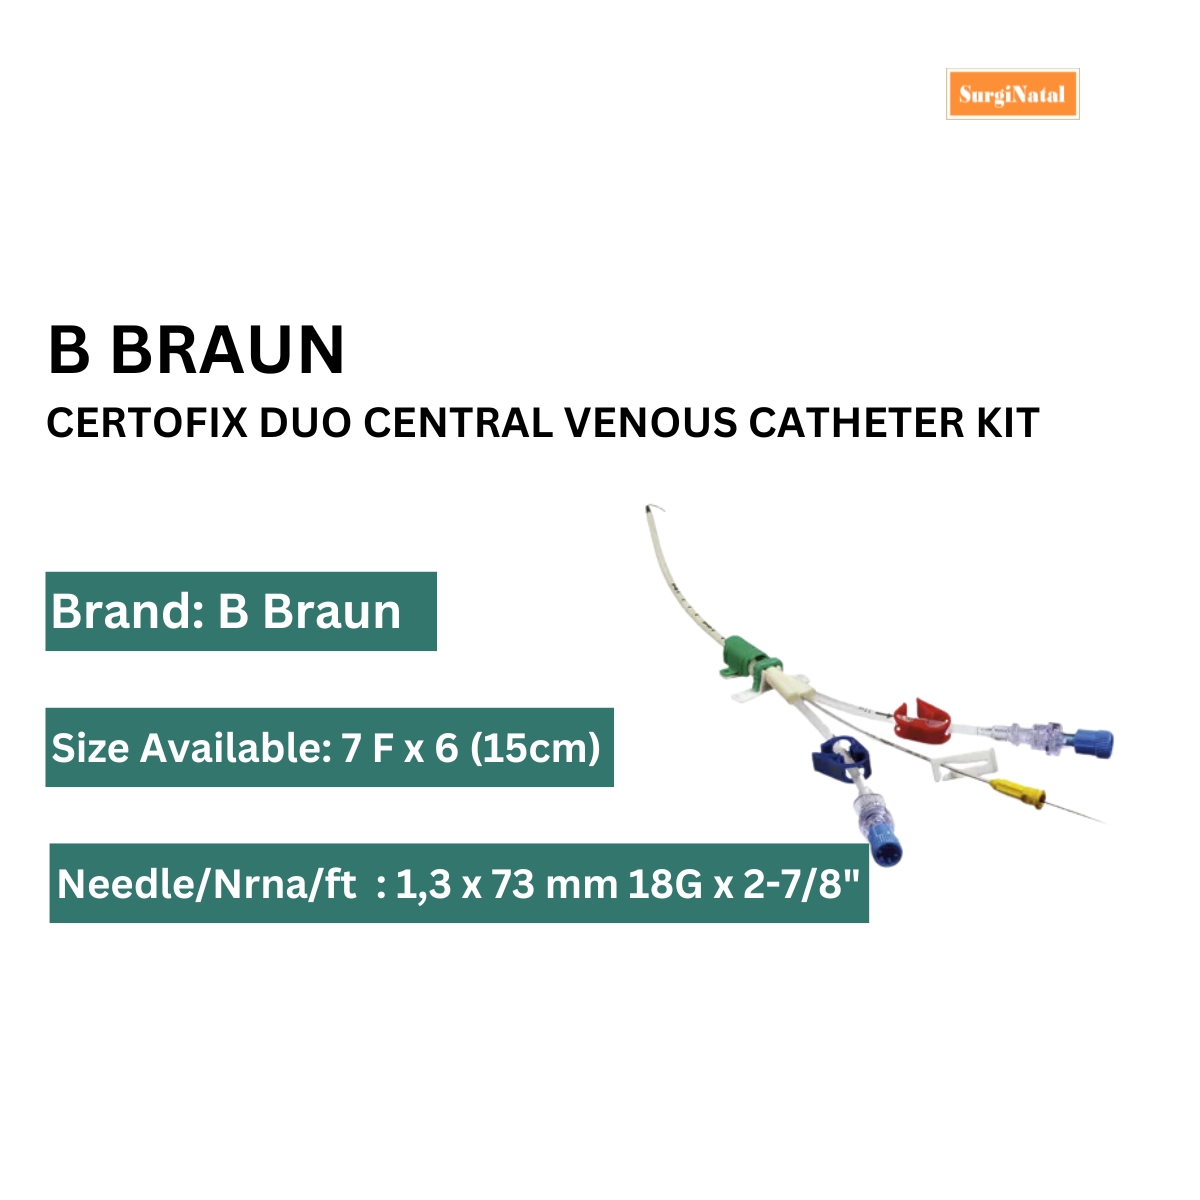  central venous catheter kit